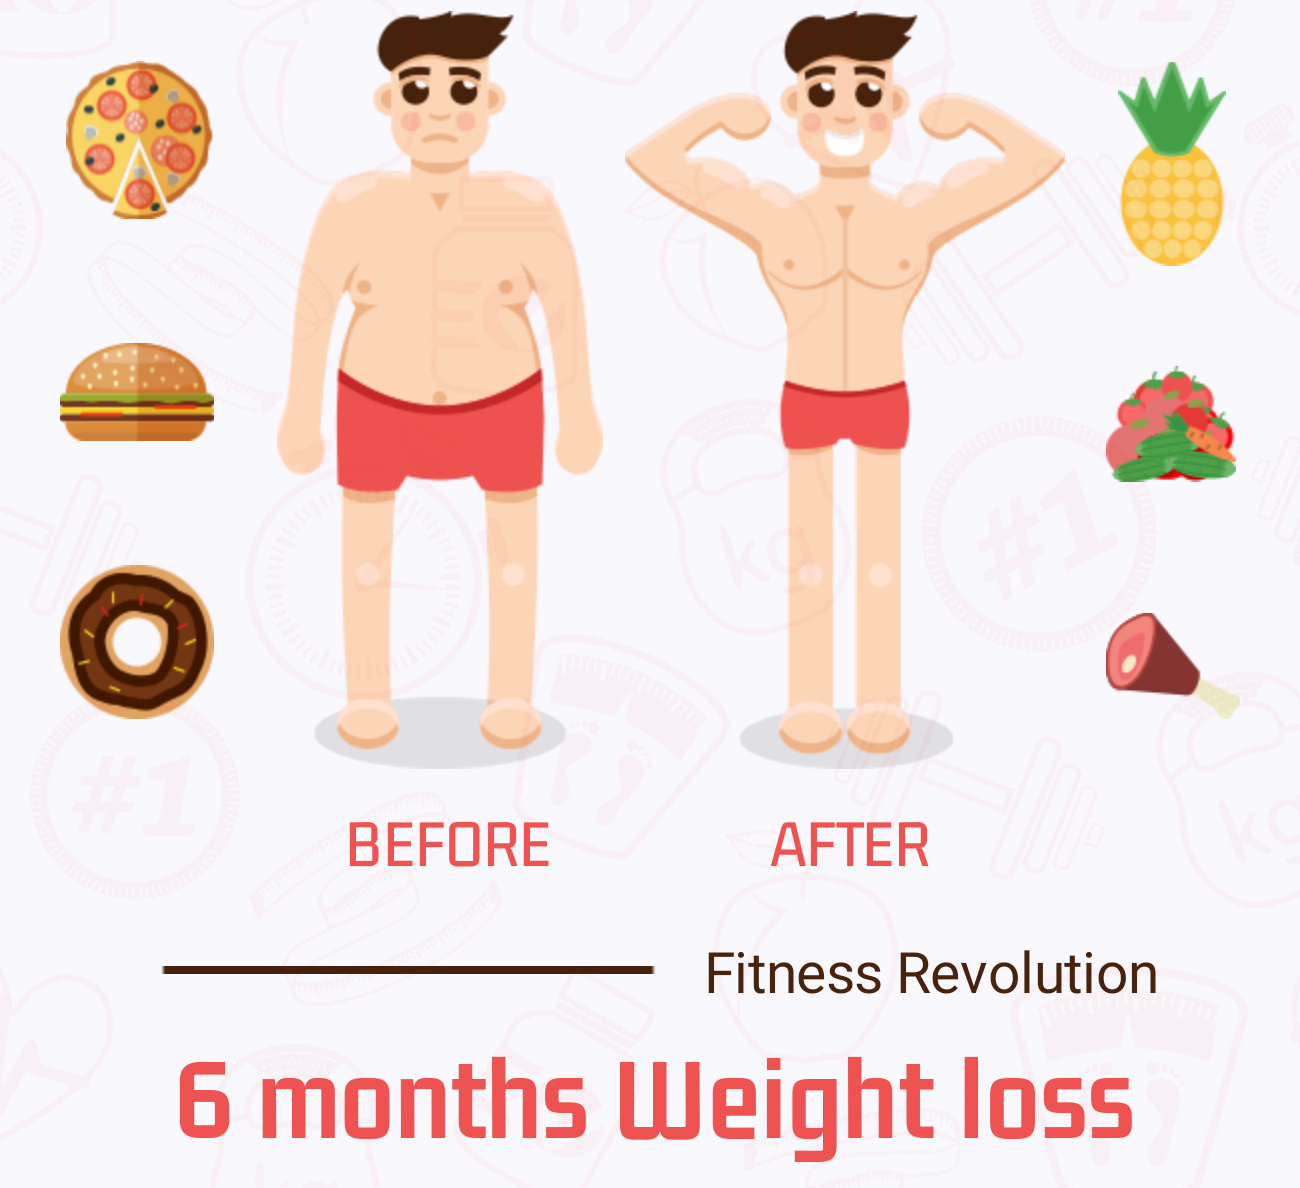 6 months weight loss